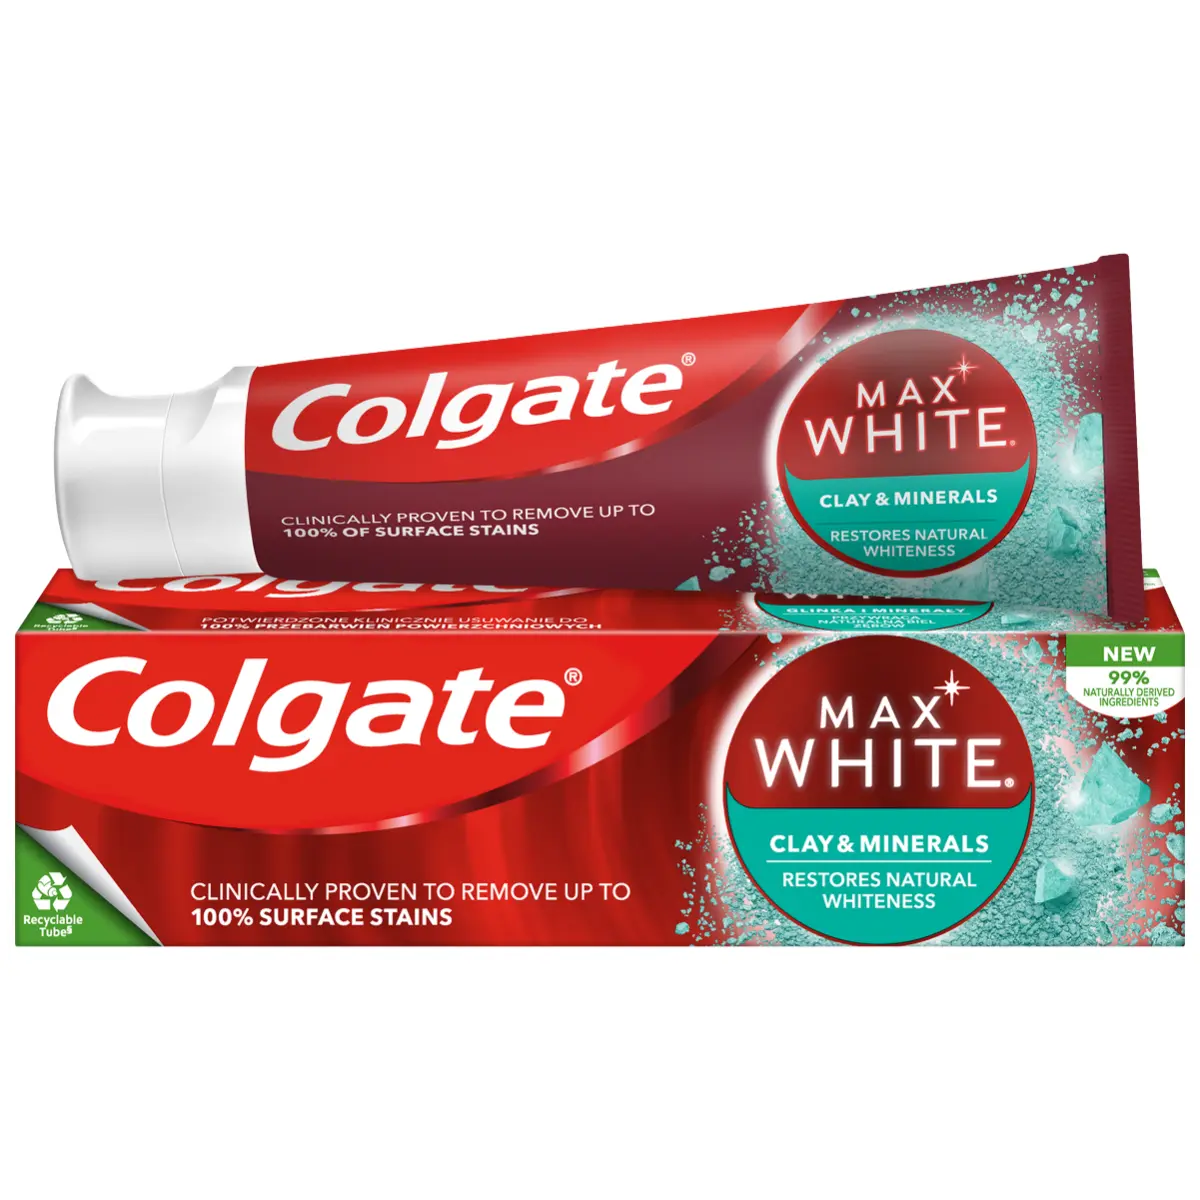 Pasta de dinti Colgate Max White Clay & Minerals pentru albire, 75 ml